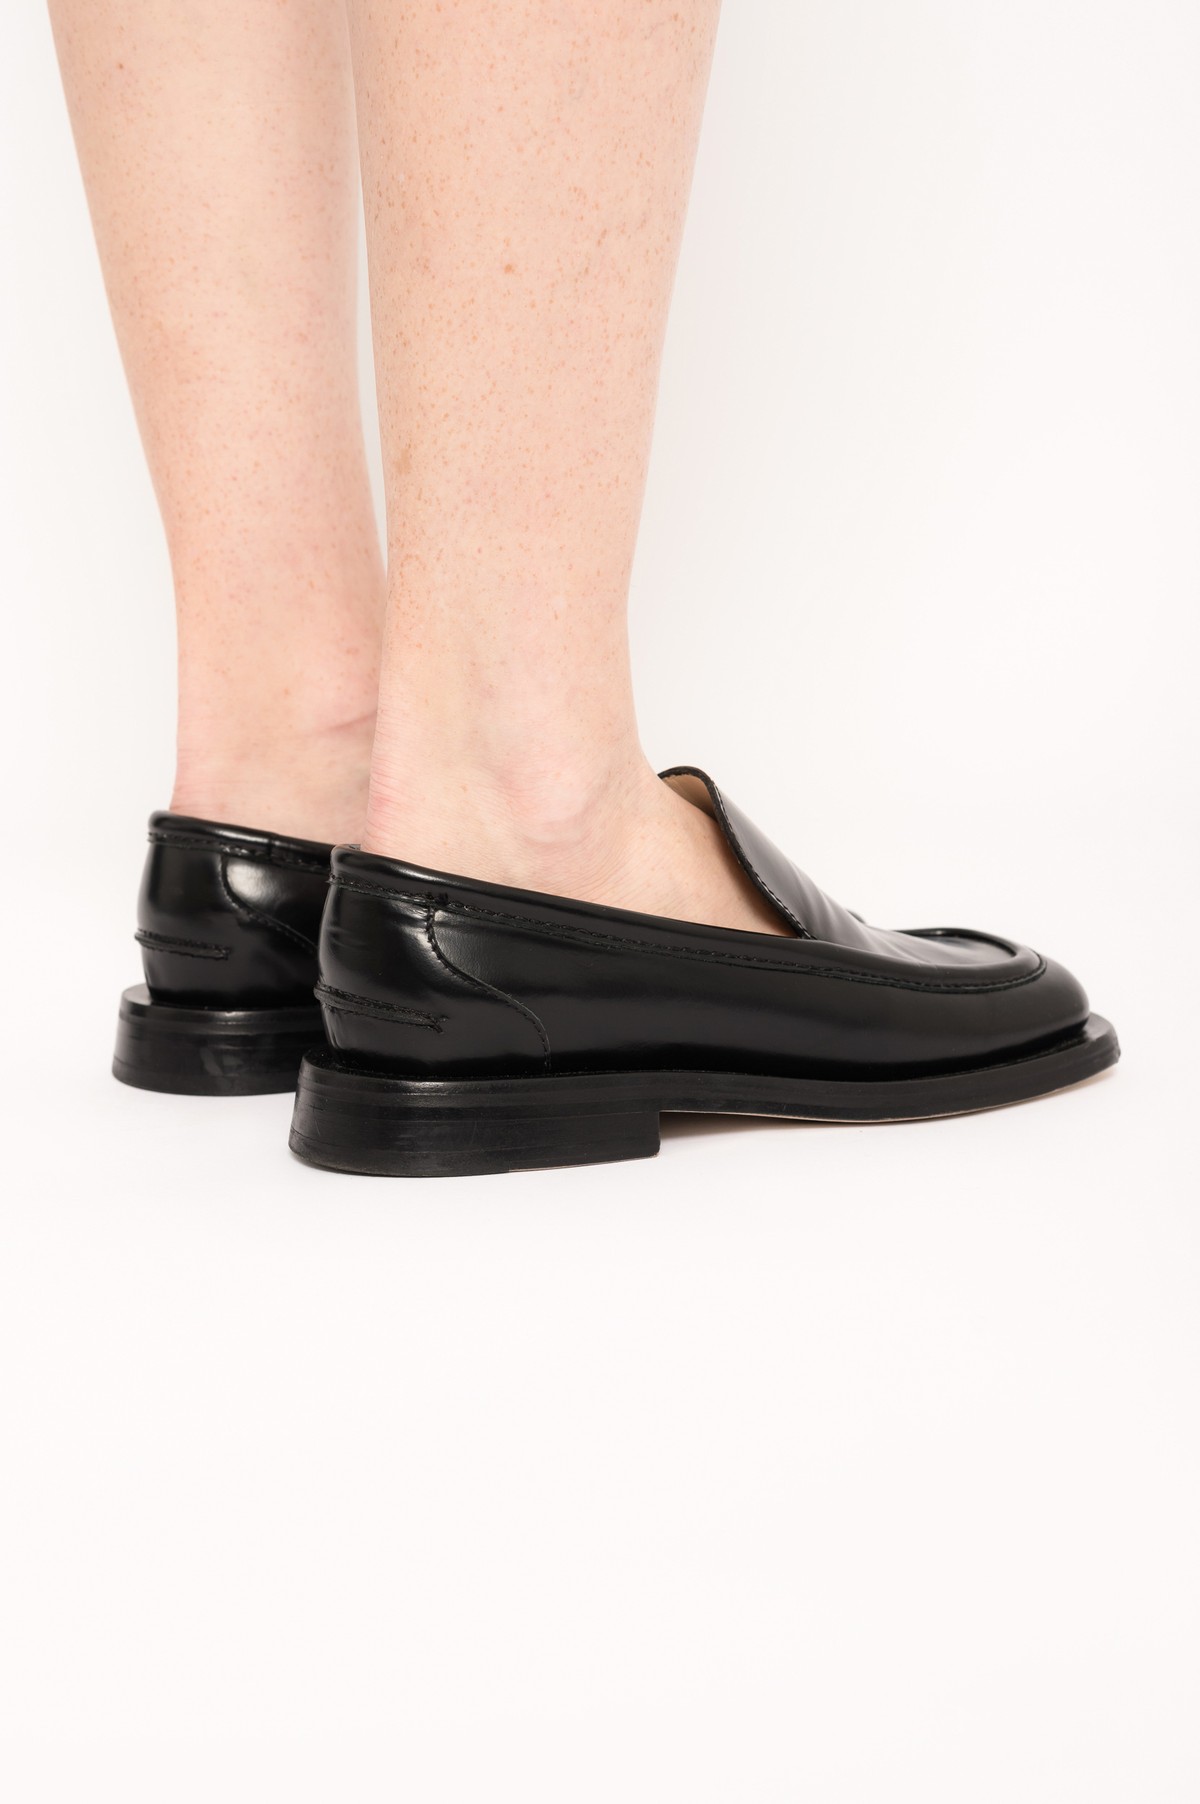 mocassim em couro com bico quadrado | square-toe leather loafers